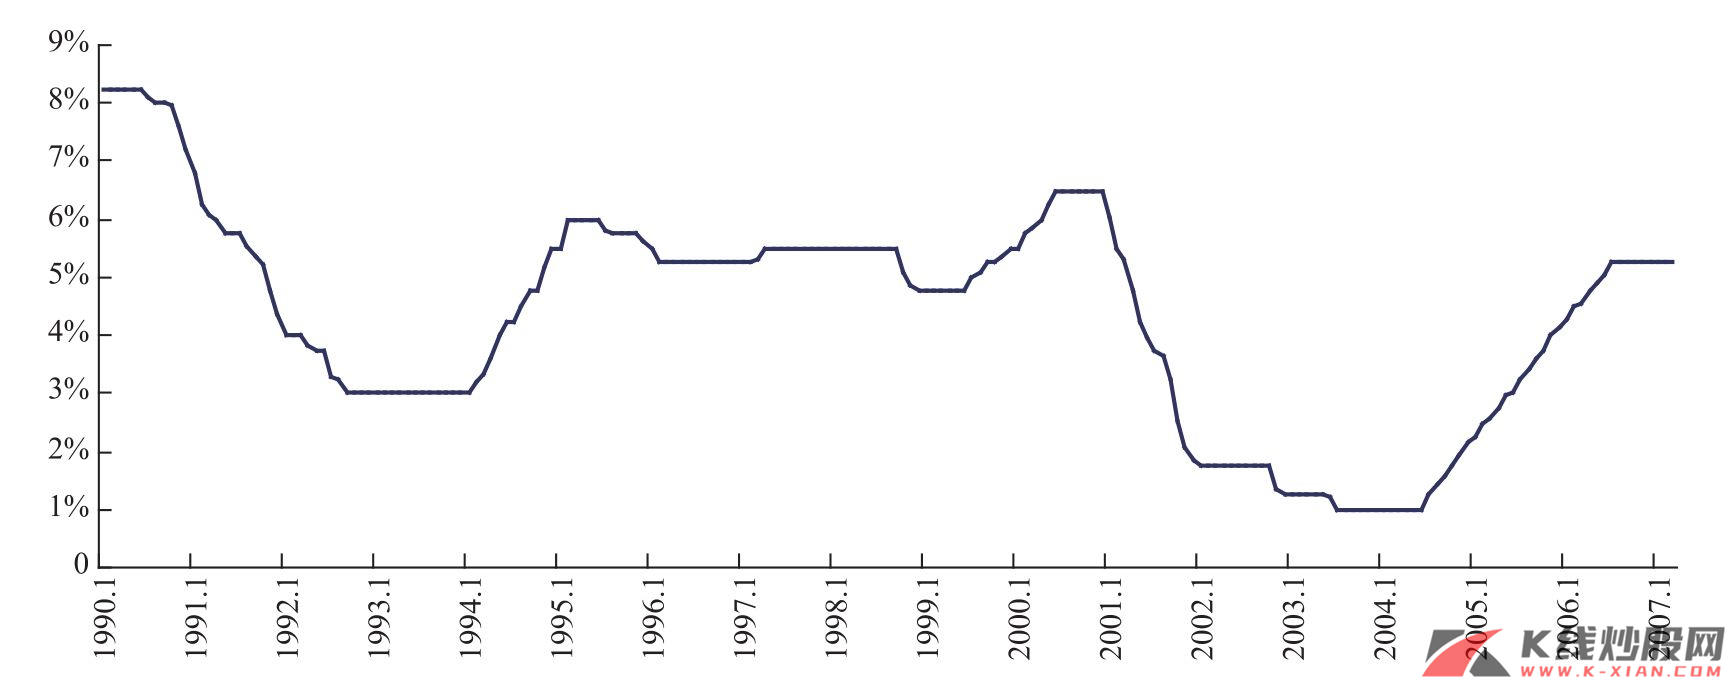 美联储1990年以来利率决策变动情况